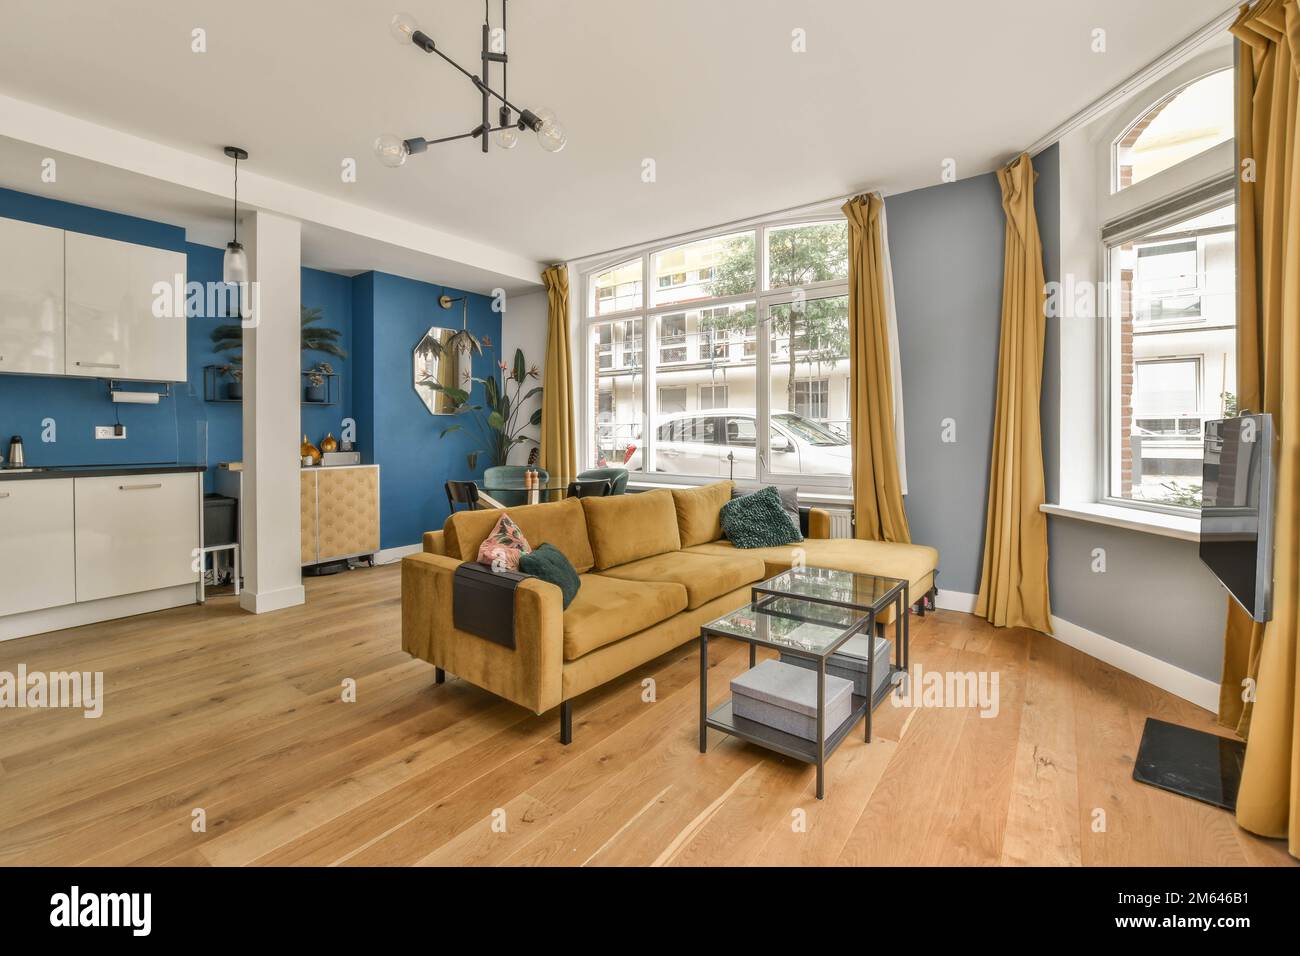 Ein Wohnzimmer mit blauen Wänden und Holzfußboden. Das Zimmer verfügt über eine gelbe Couch, einen Couchtisch, zwei Stühle und eine Stockfoto